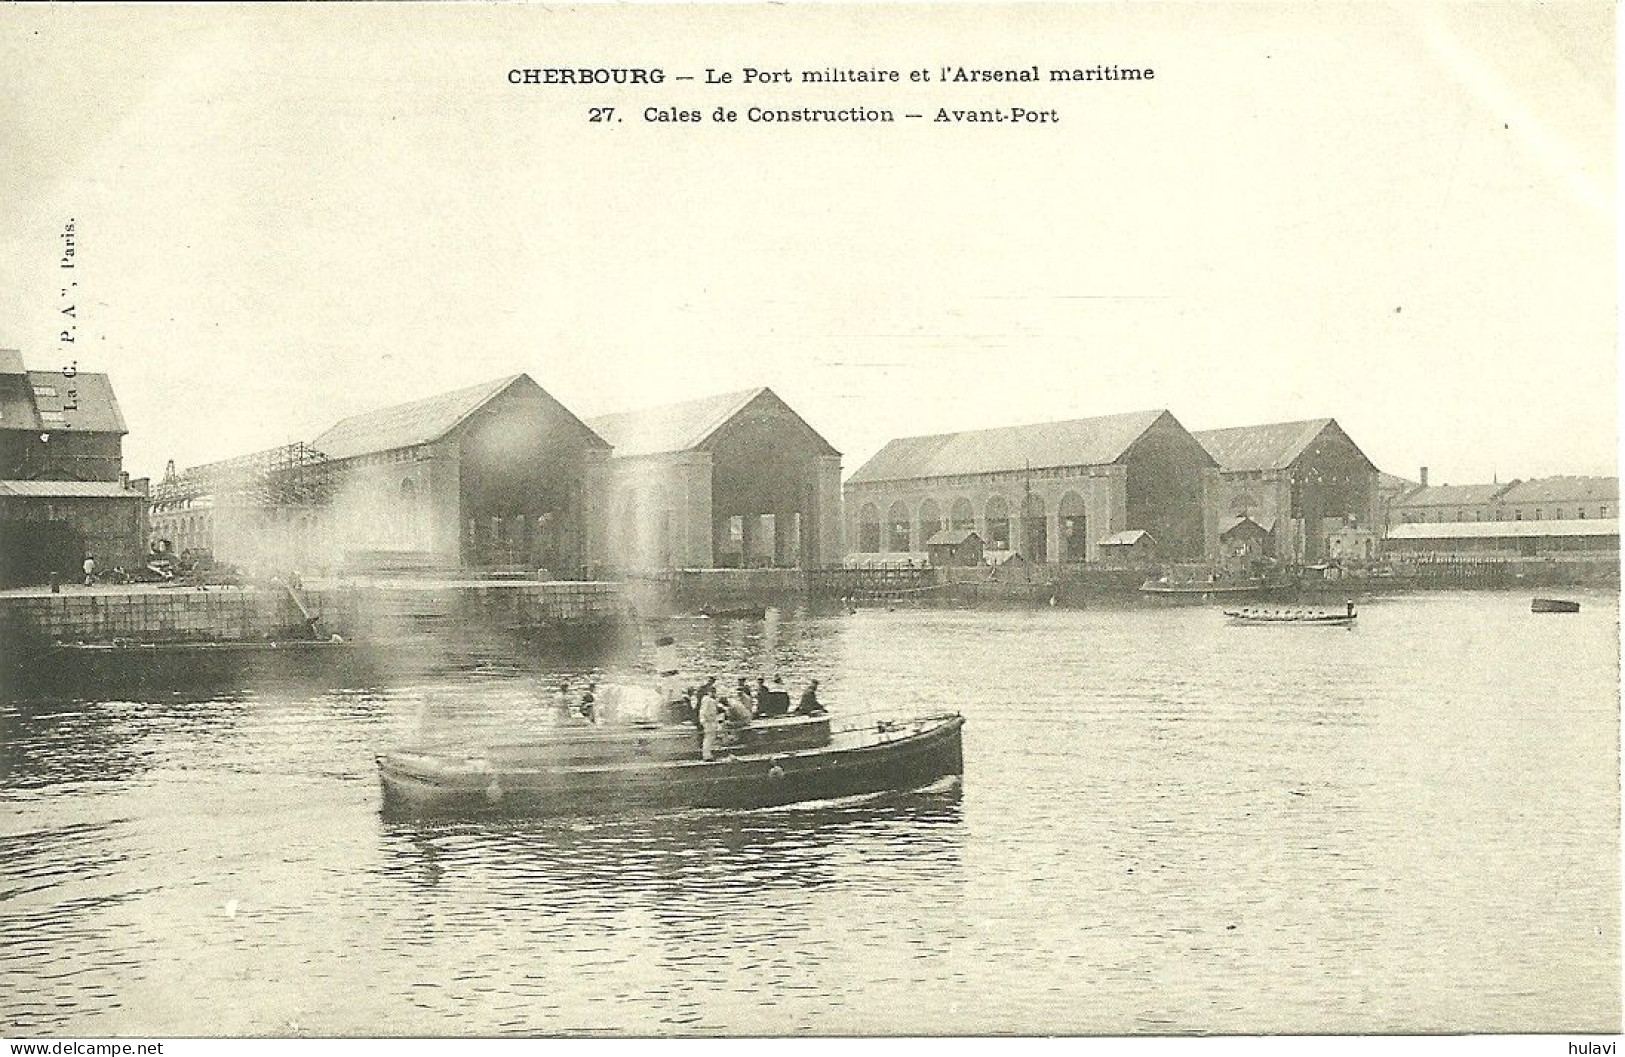 50  CHERBOURG - LE PORT MILITAIRE ET L' ARSENAL - CALES DE CONSTRUCTION - AVANT PORT (ref 8505) - Cherbourg